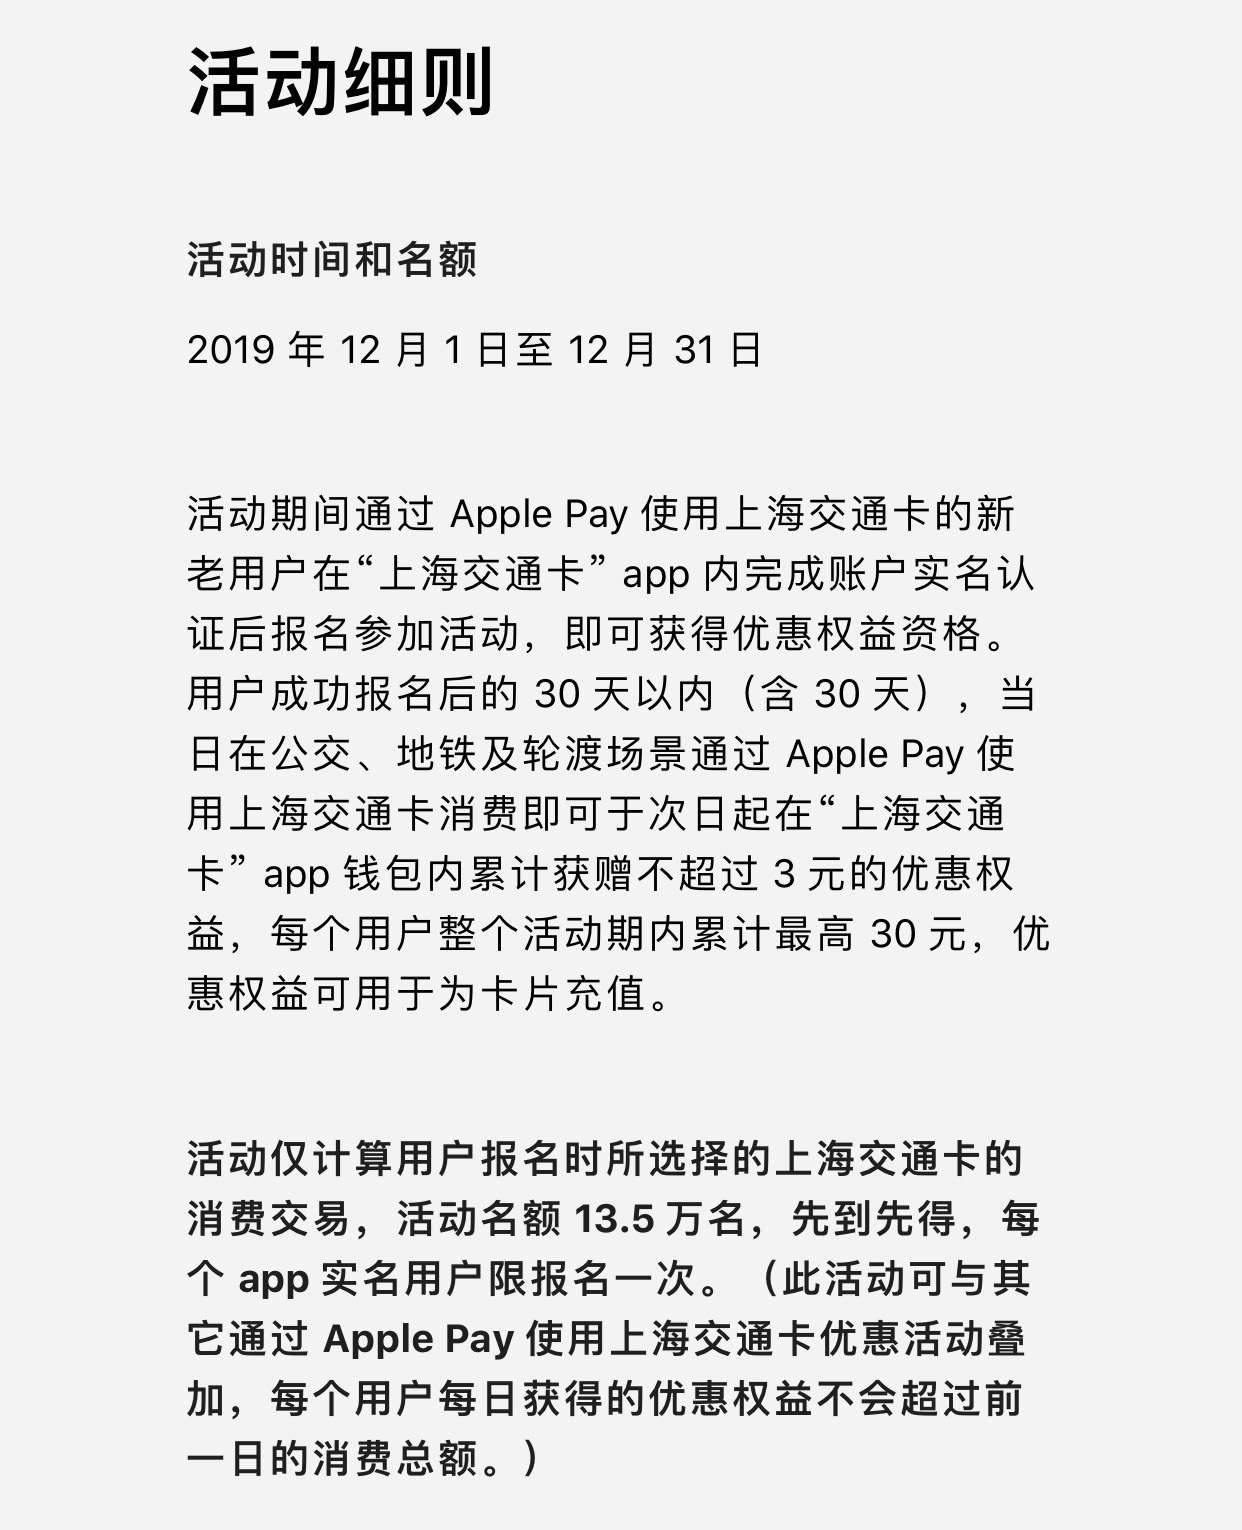 Apple Pay 上海搭公車優惠！今天刷，明天現金回饋 | Apple News, Apple Pay, 上海交通卡 | iPhone News 愛瘋了